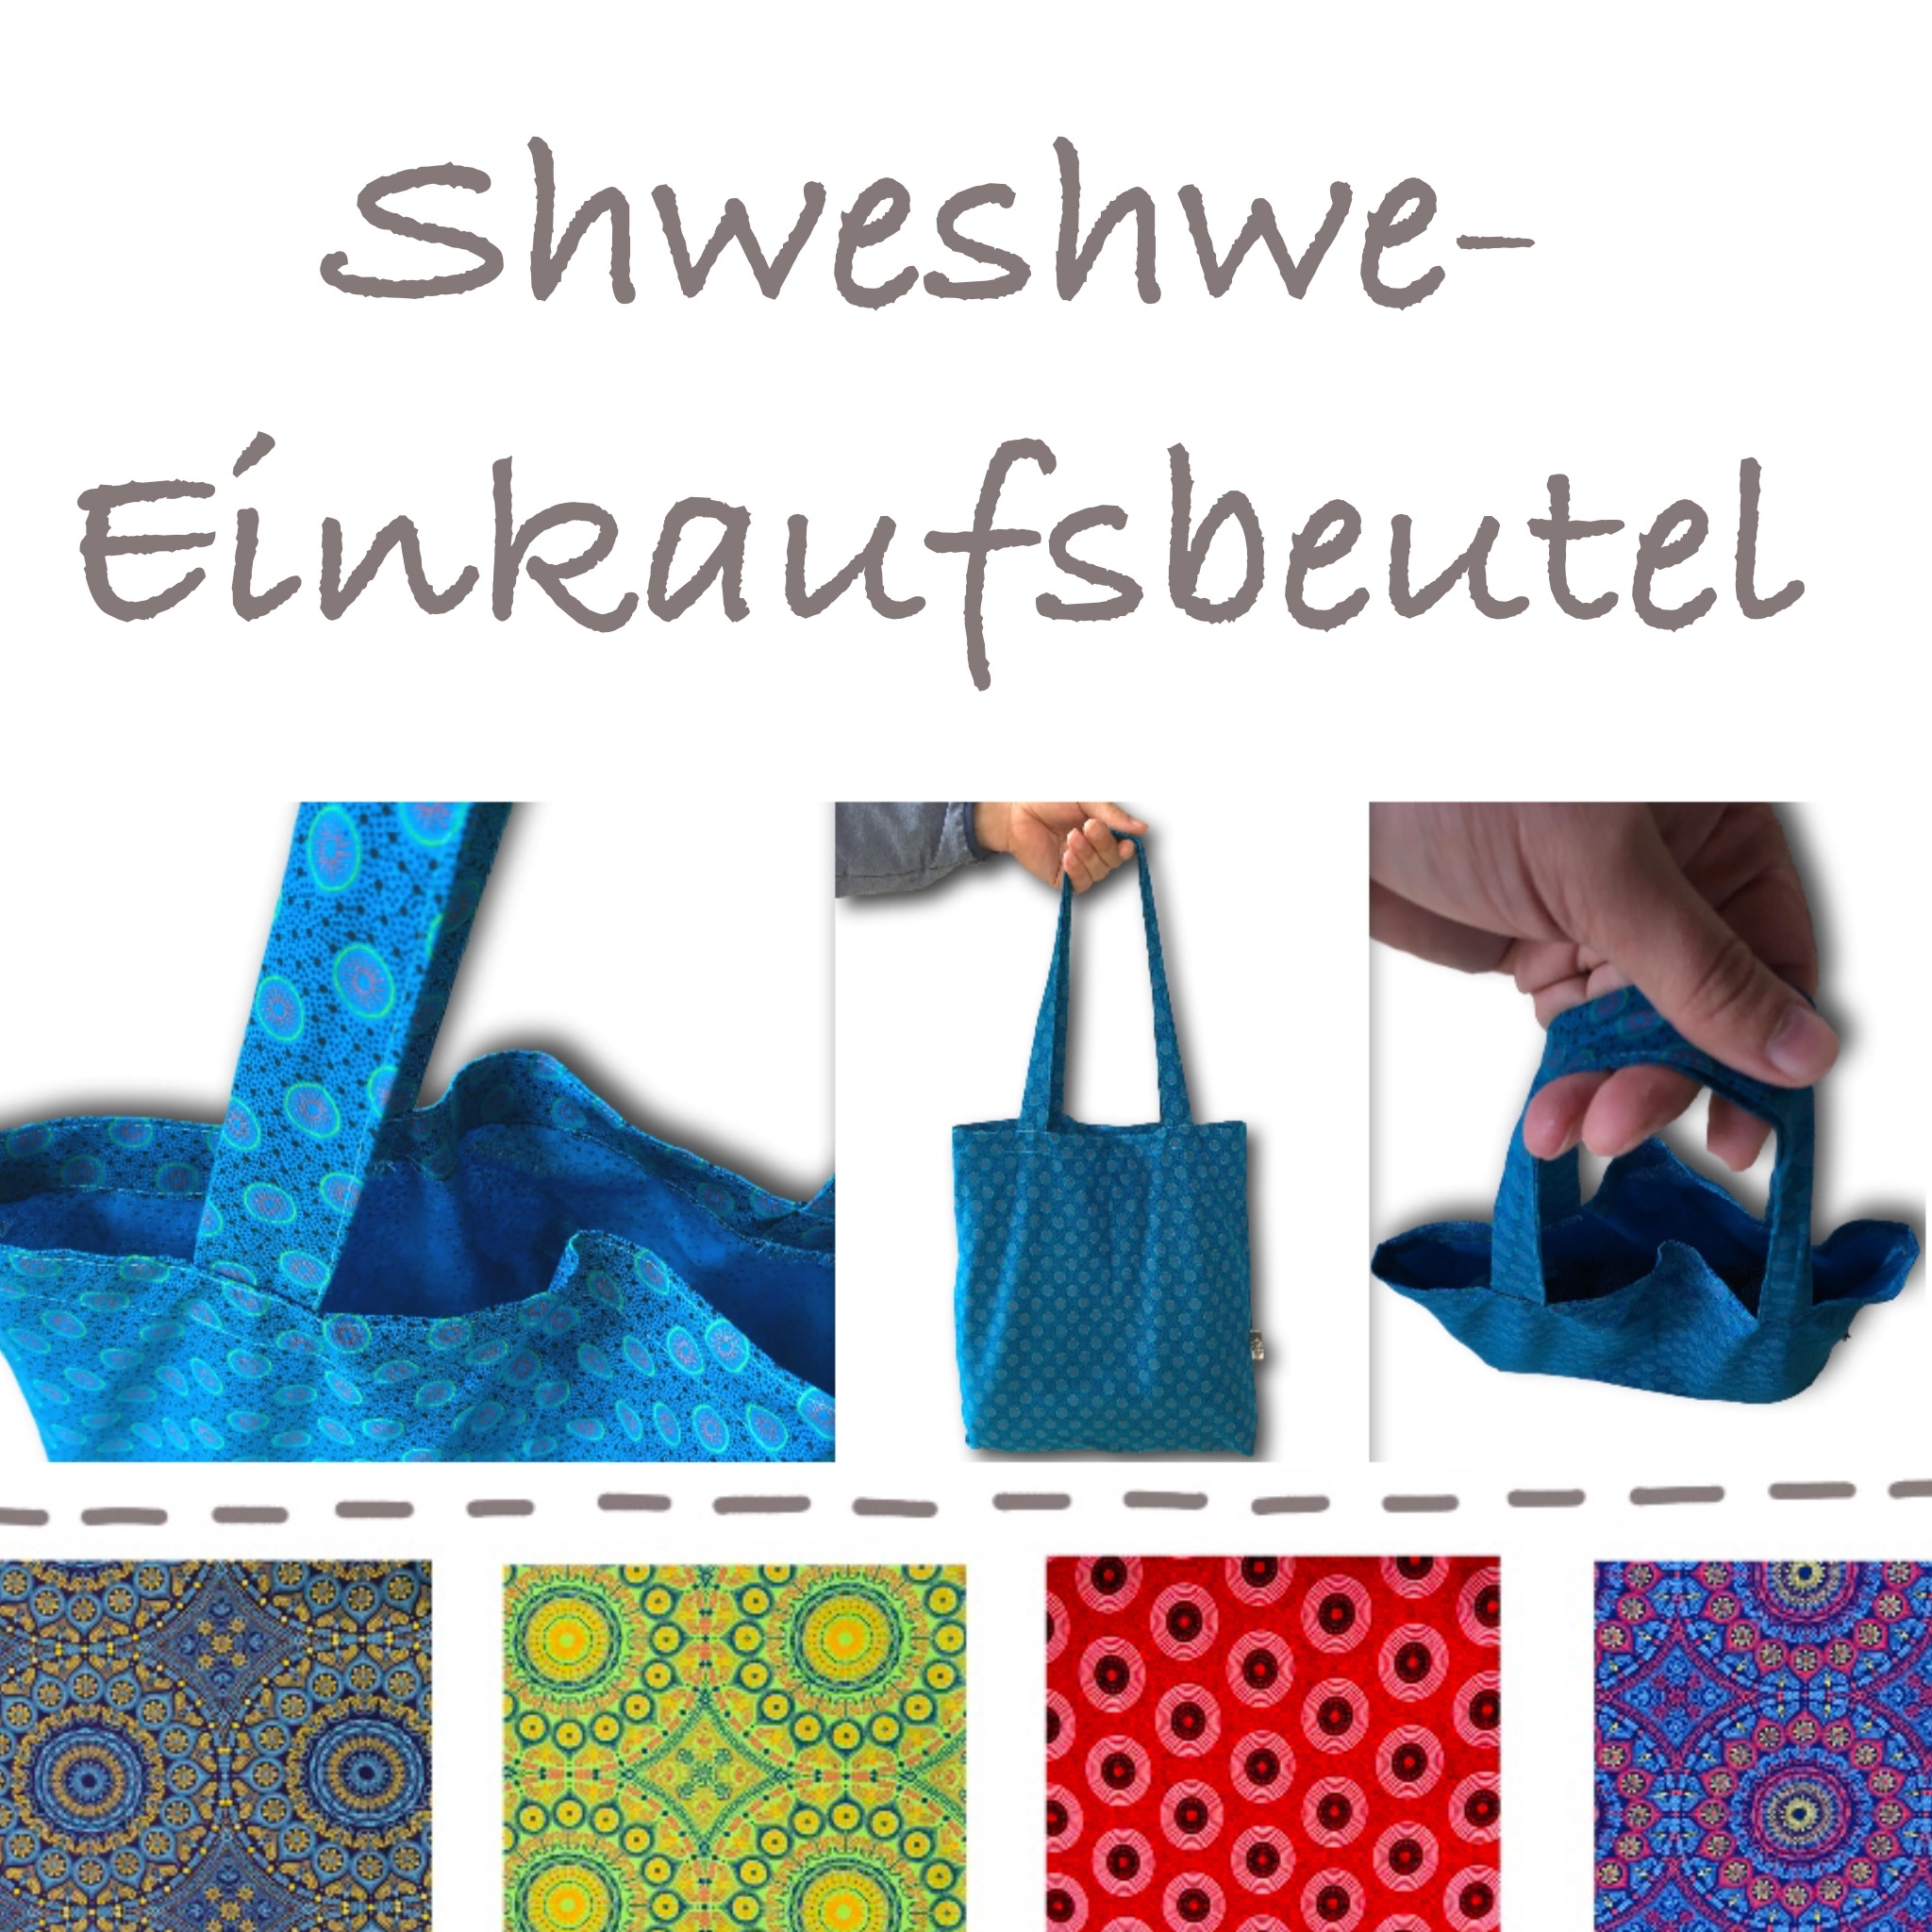 Shweshwe-Einkaufsbeutel